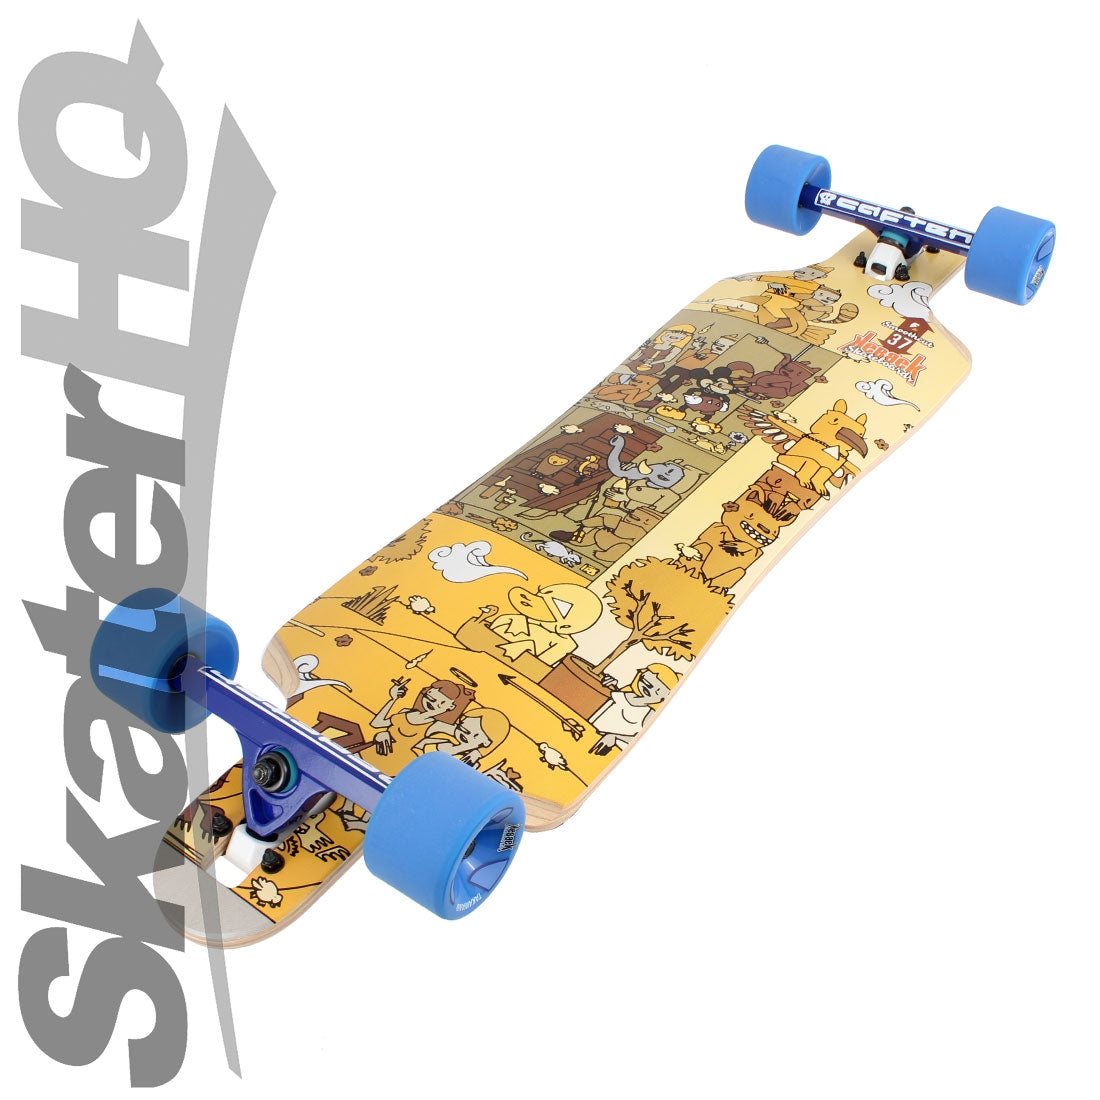 Kebbek Smoothcut 37 Skate House Complete Skateboard Completes Longboards